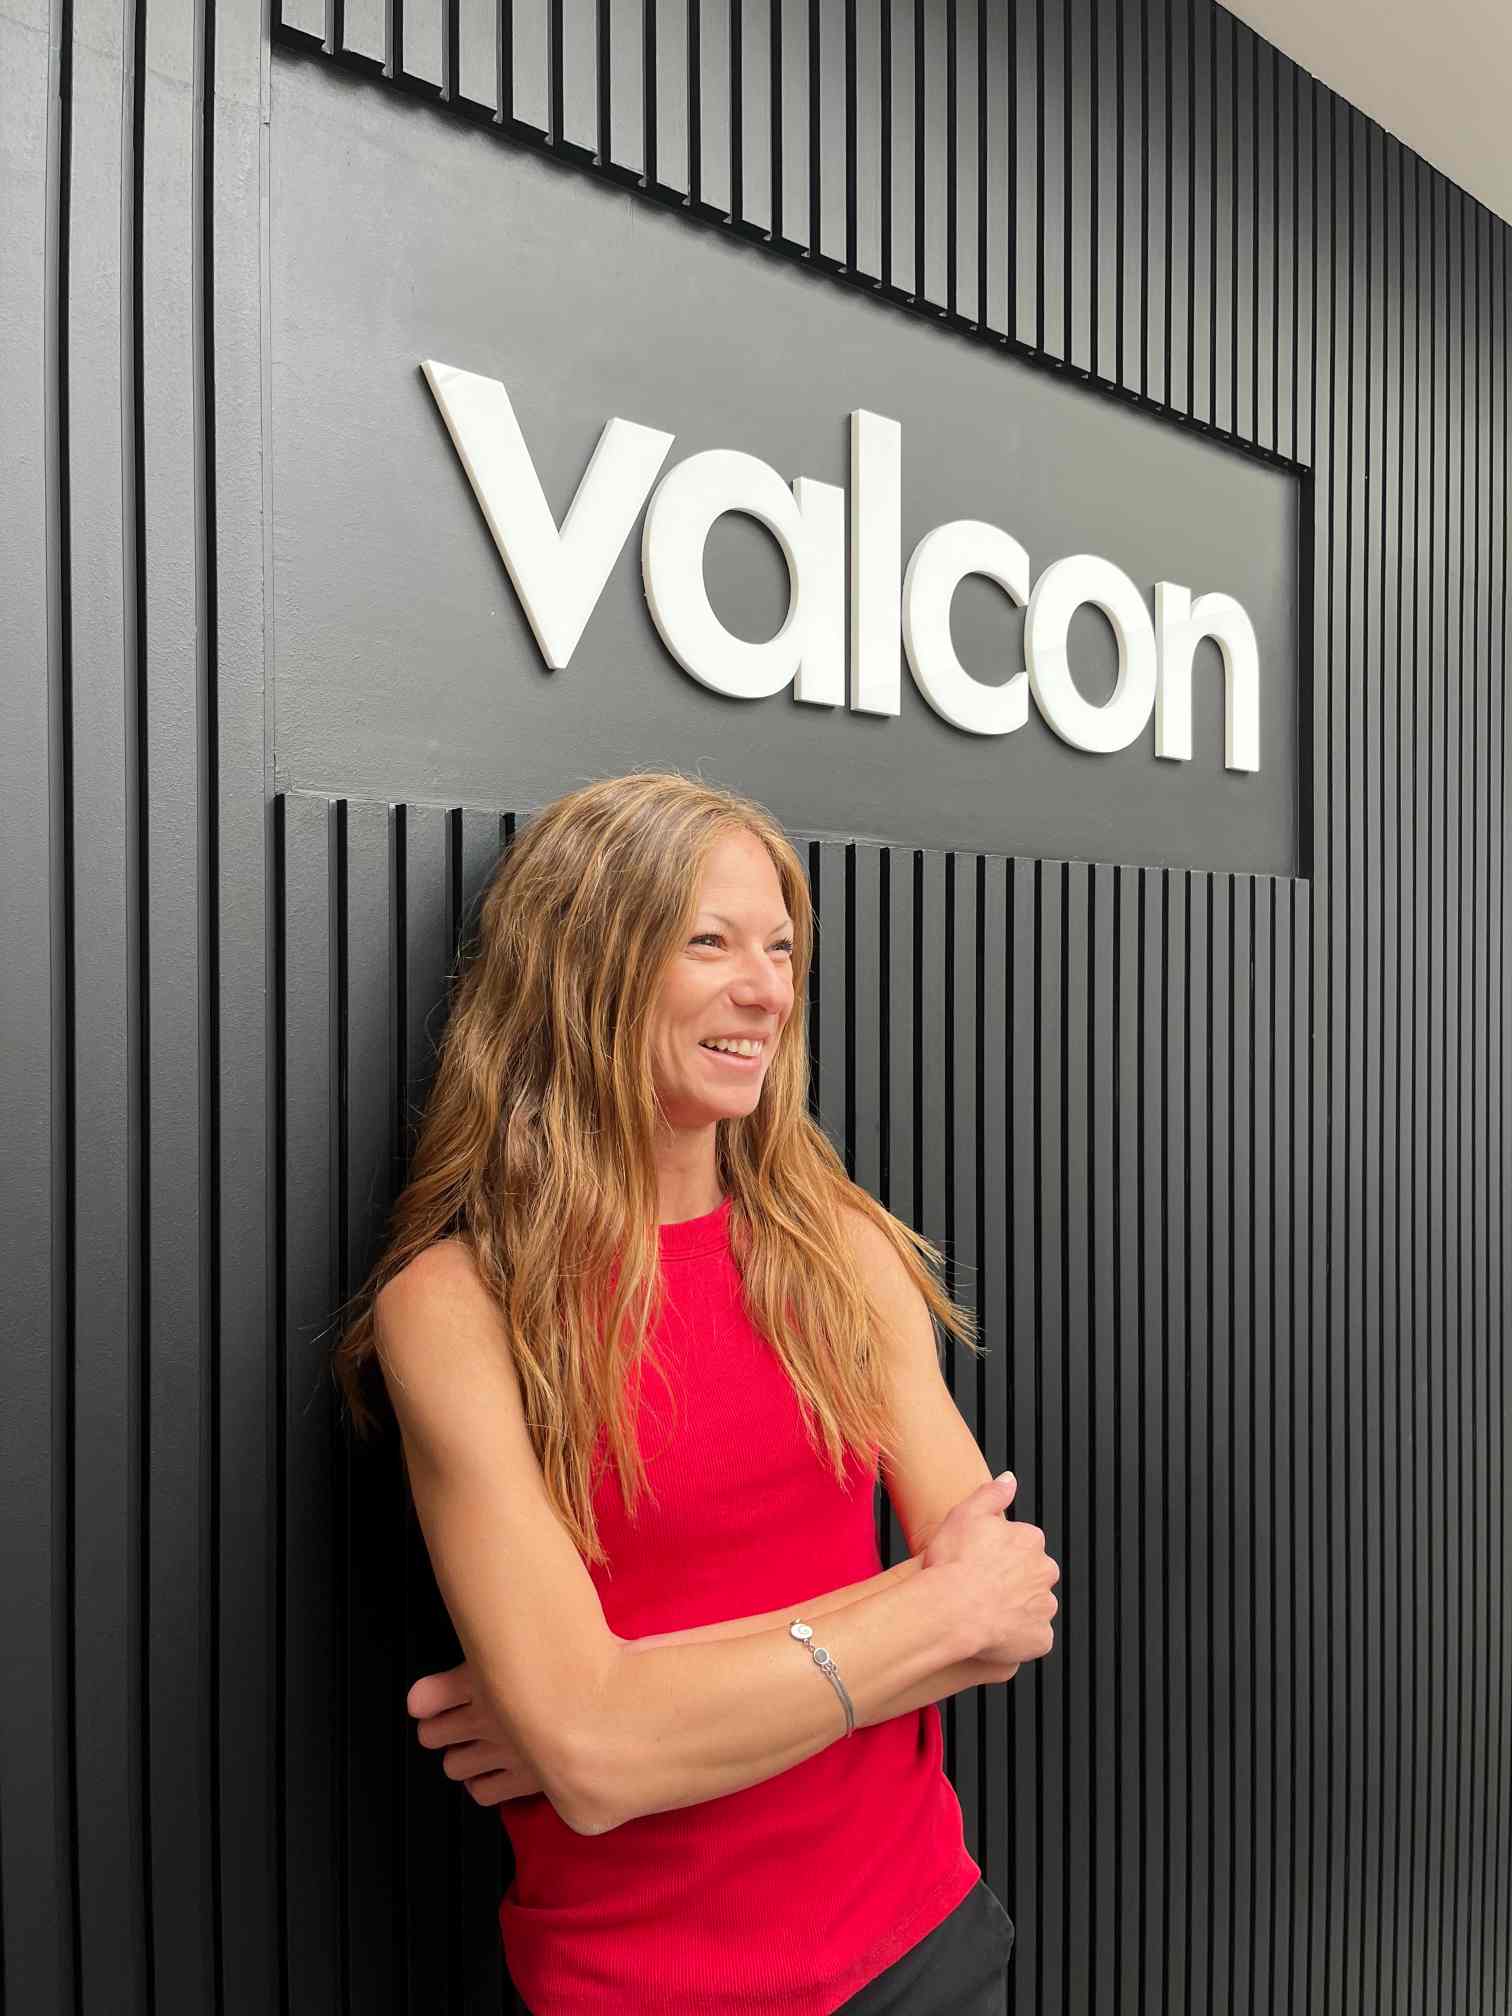 Valcon developer